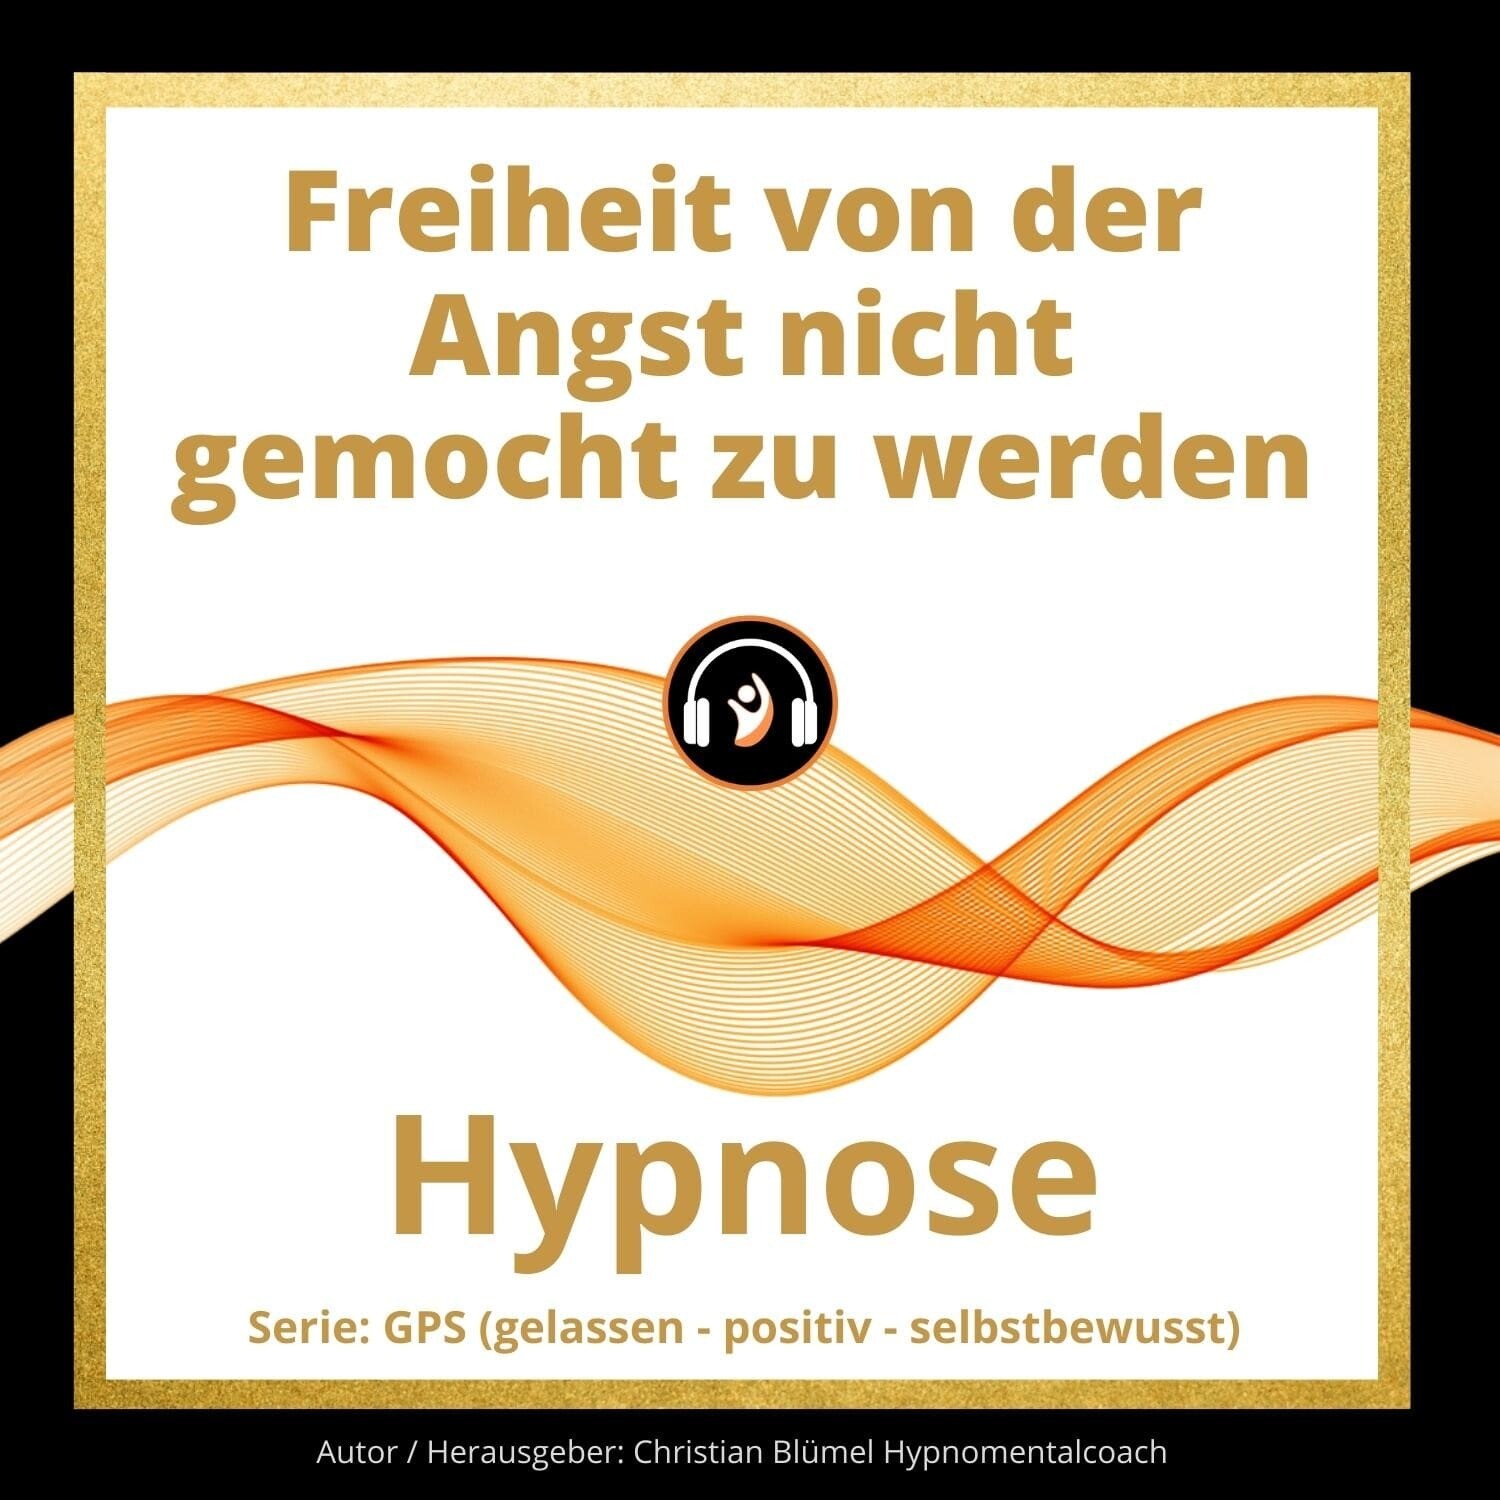 Audio Hypnose: Freiheit von der Angst nicht gemocht zu werden - GPS Hypnose